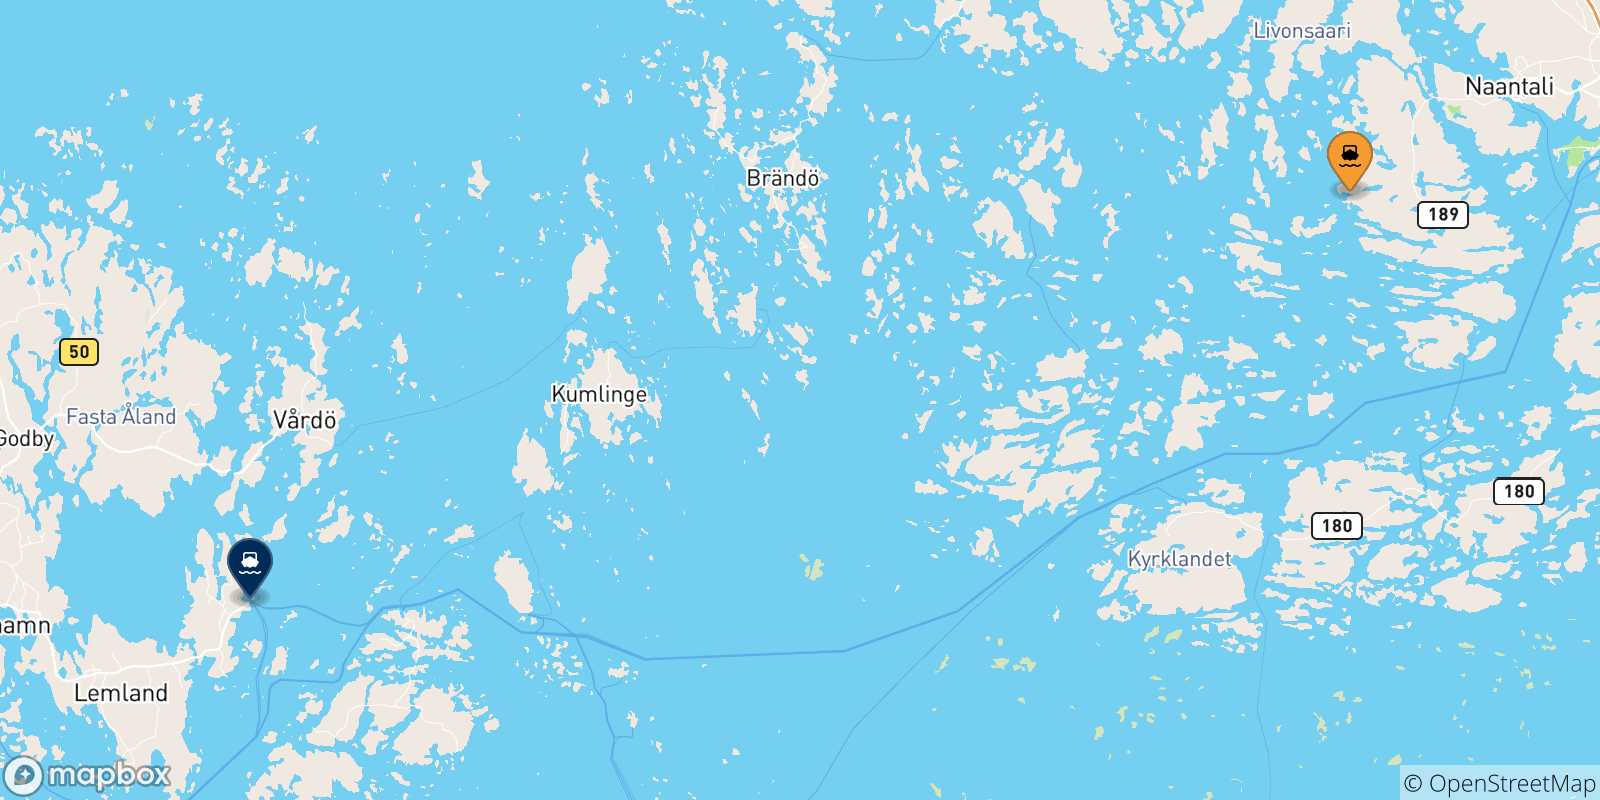 Mappa delle possibili rotte tra Naantali e la Finlandia